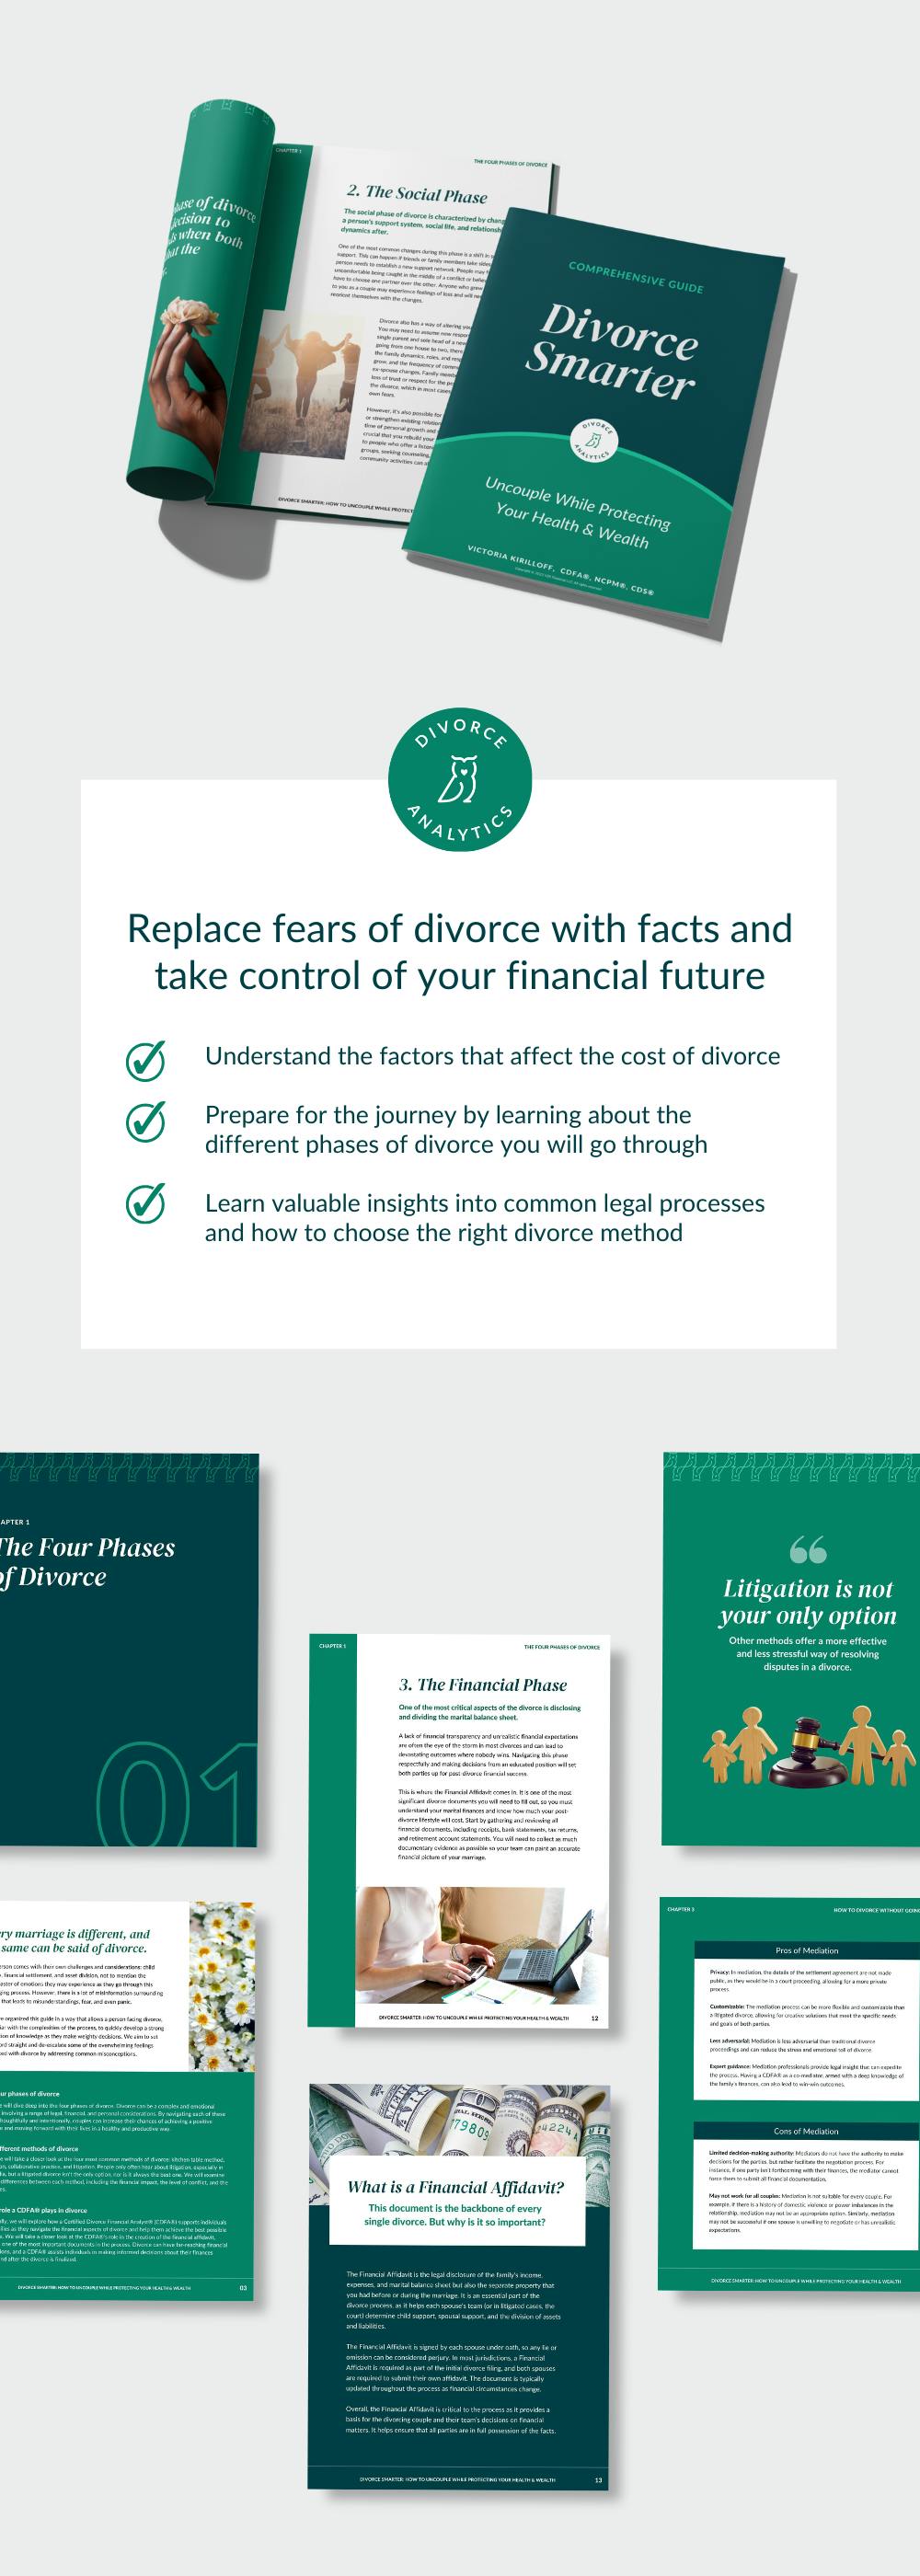 Divorce Smarter Ebook